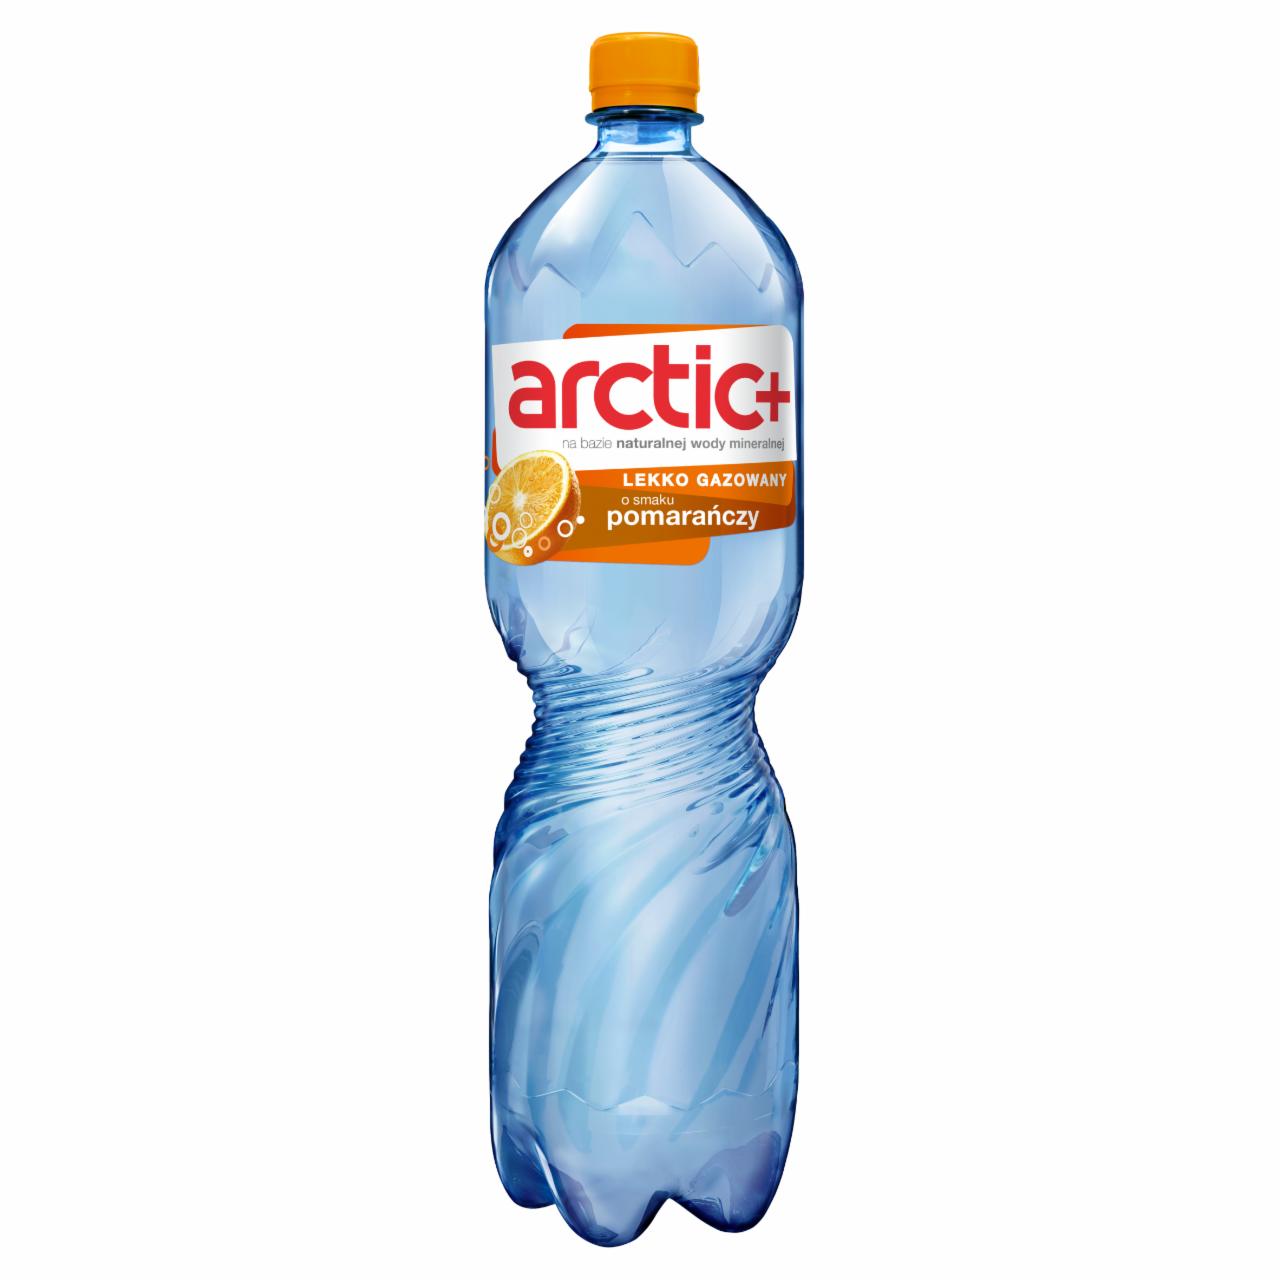 Zdjęcia - Arctic Plus Napój lekko gazowany o smaku pomarańczy 1,5 l